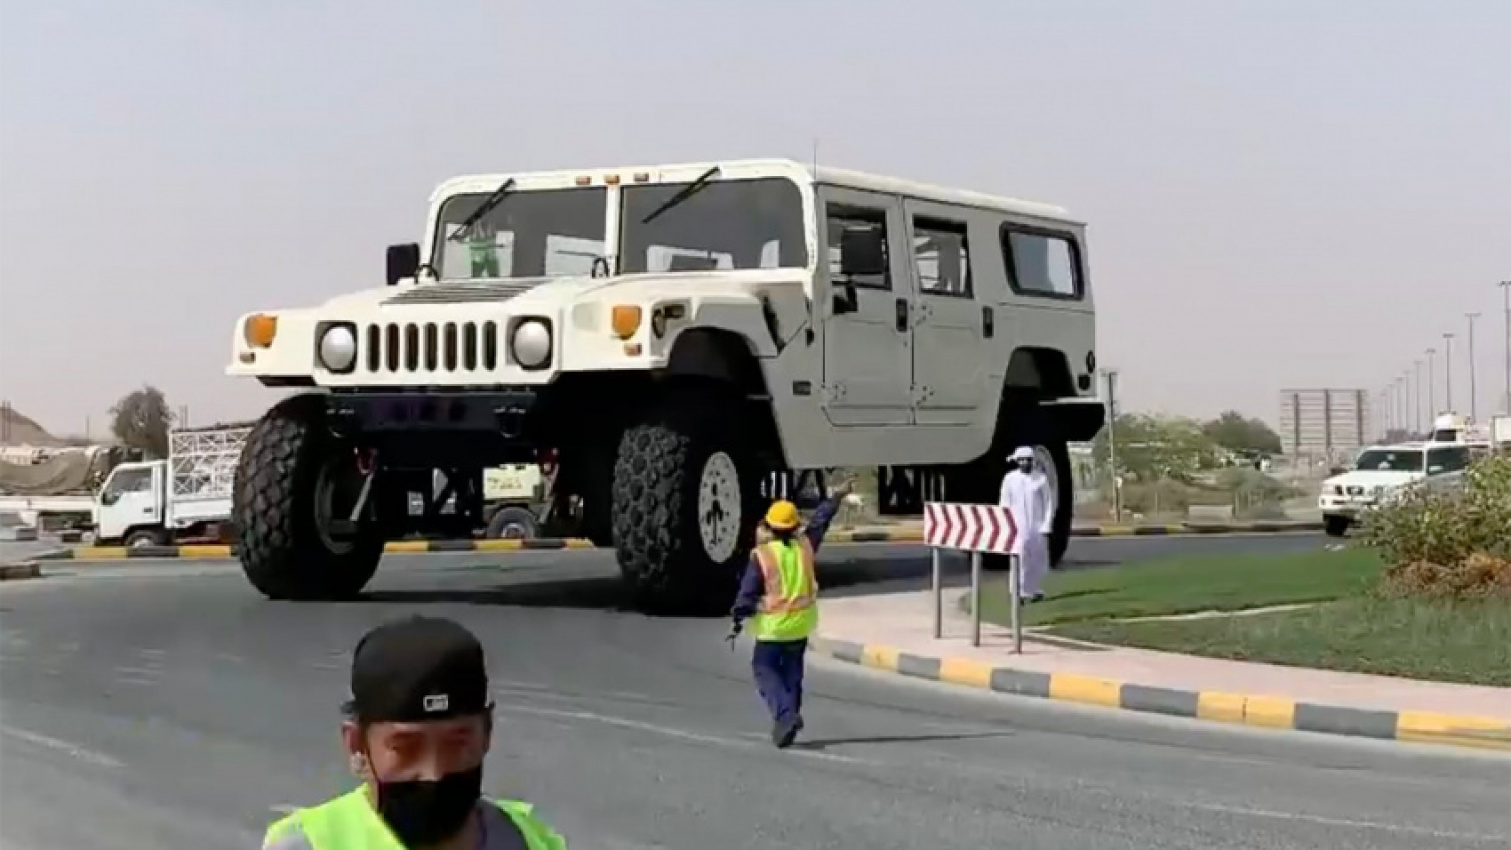 Maior Jeep Willys do mundo com 6m de altura